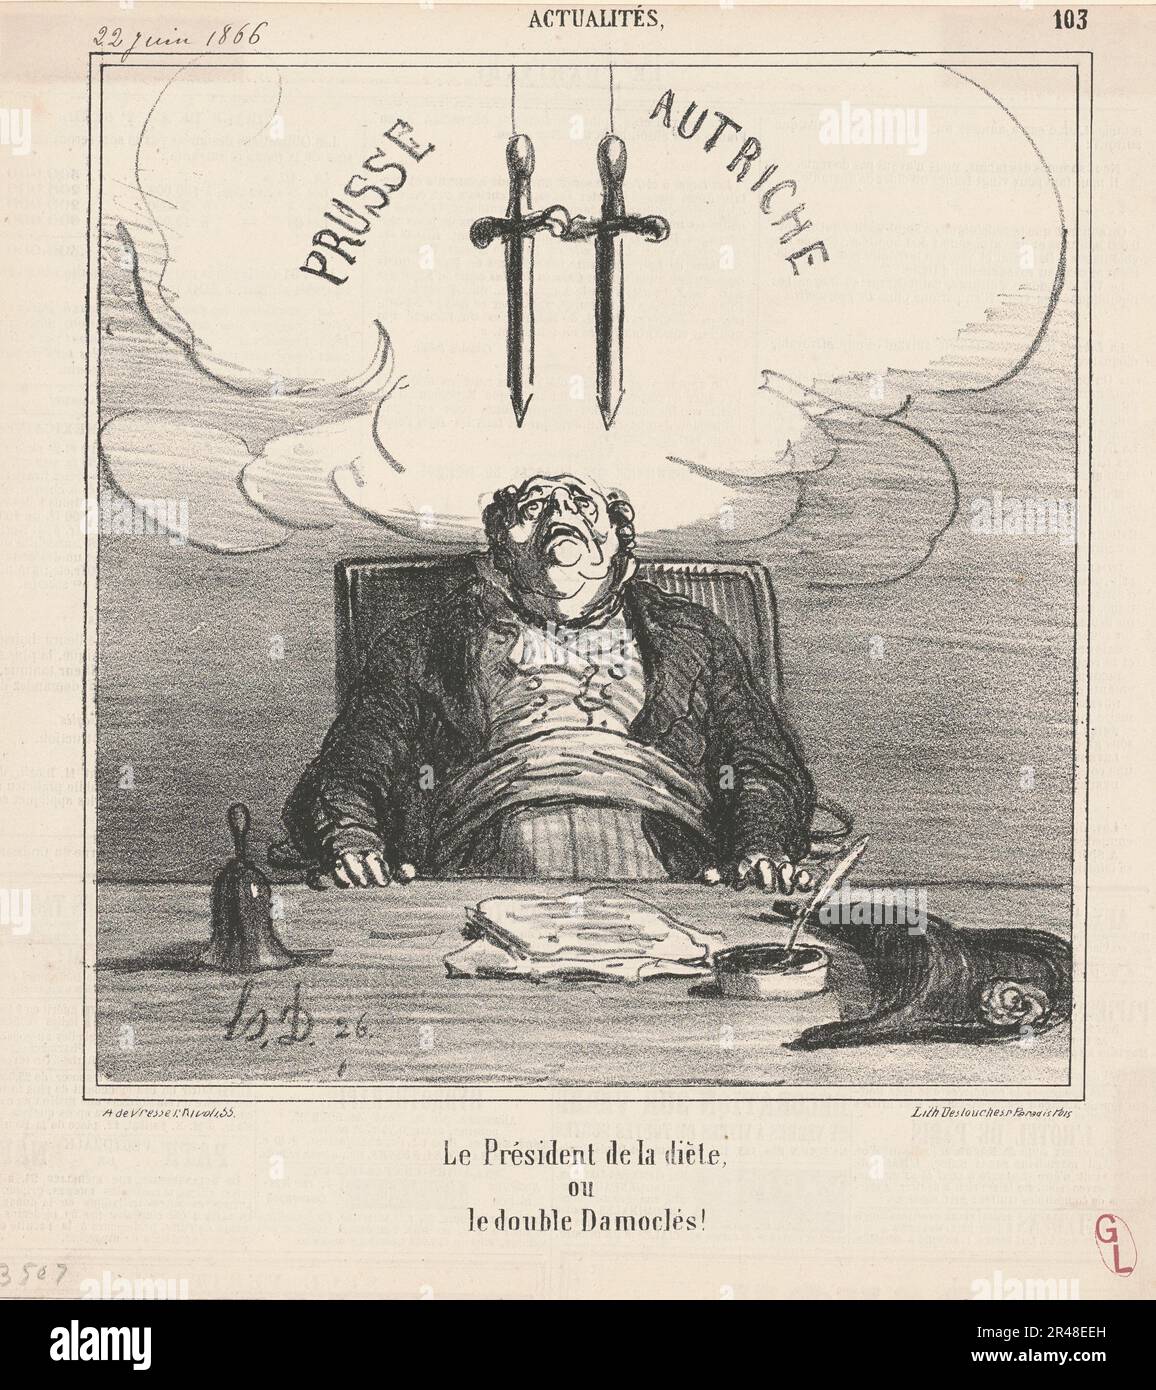 Le Pr&#xe9;sident de la di&#xe8;te, 19th century.The President of the regime. Stock Photo